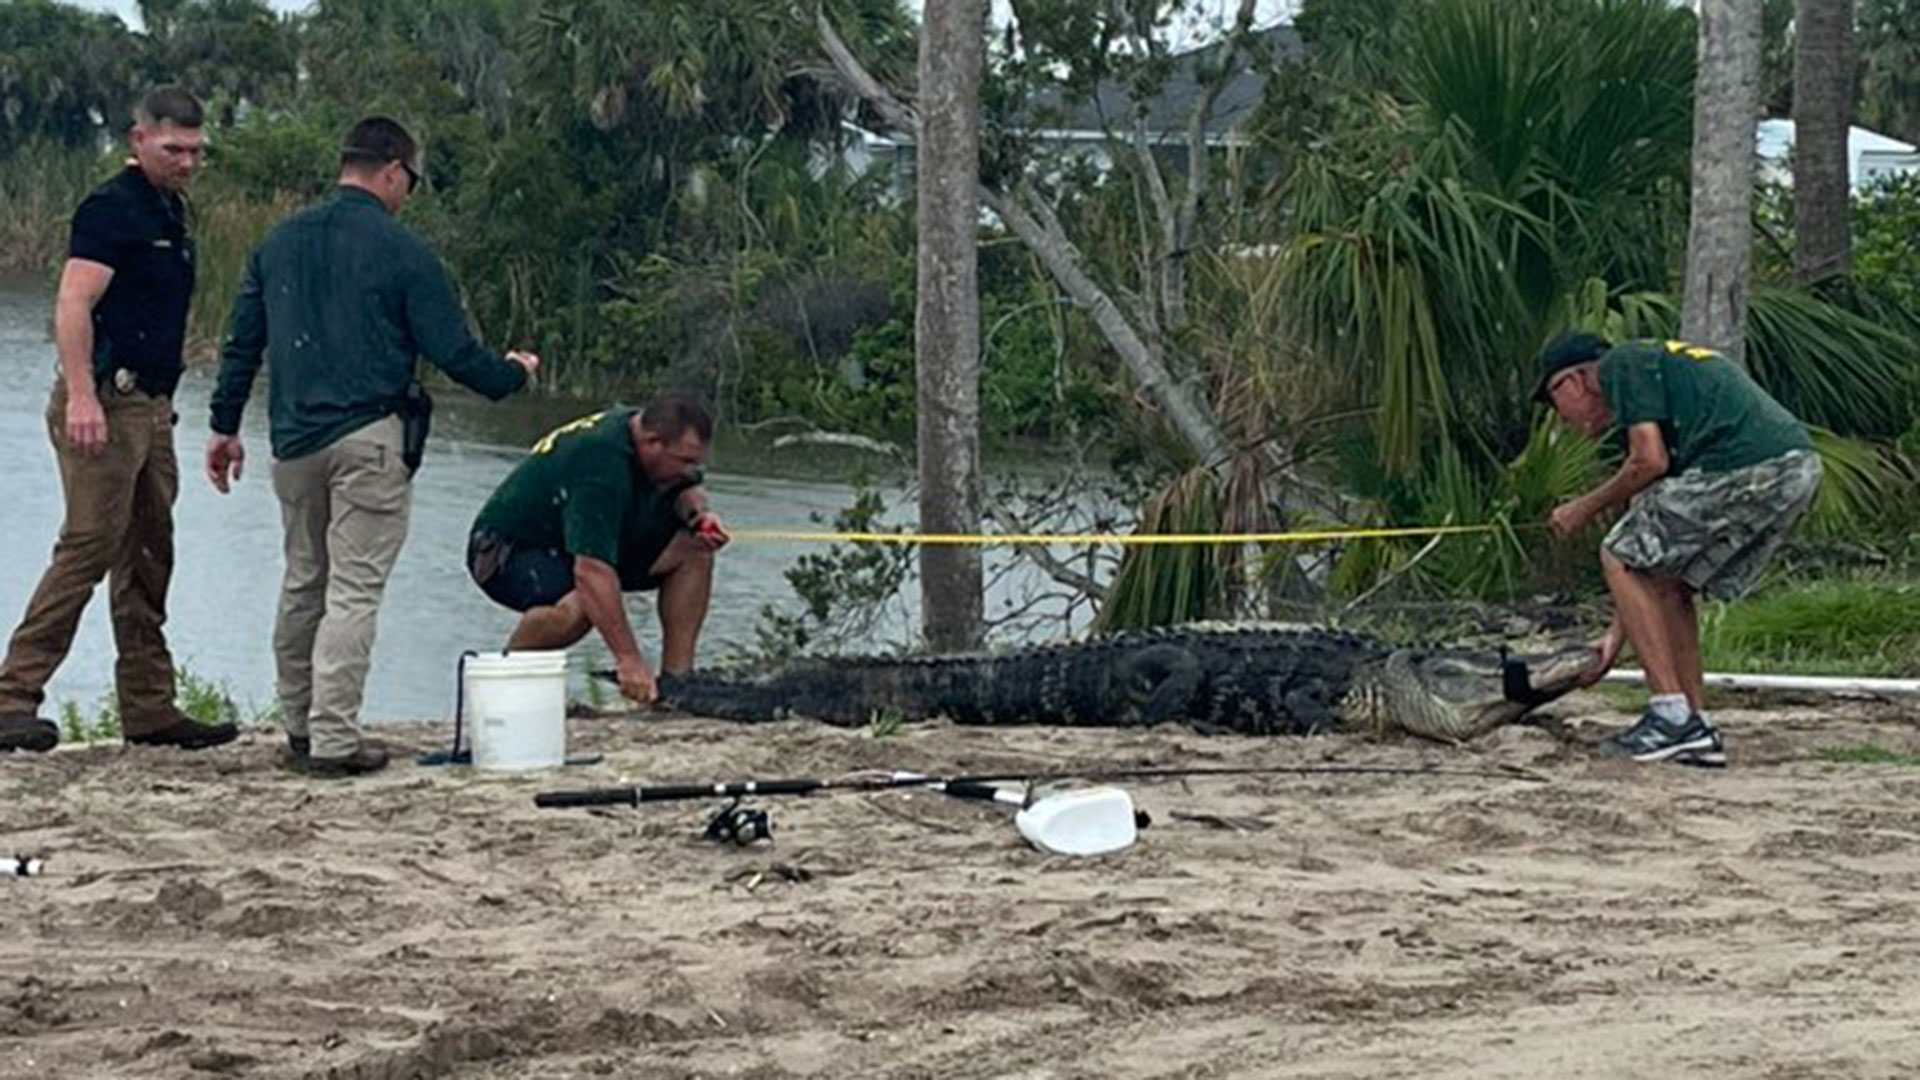 Un joven perdió su brazo tras ser atacado por un caimán de más de tres metros en Florida